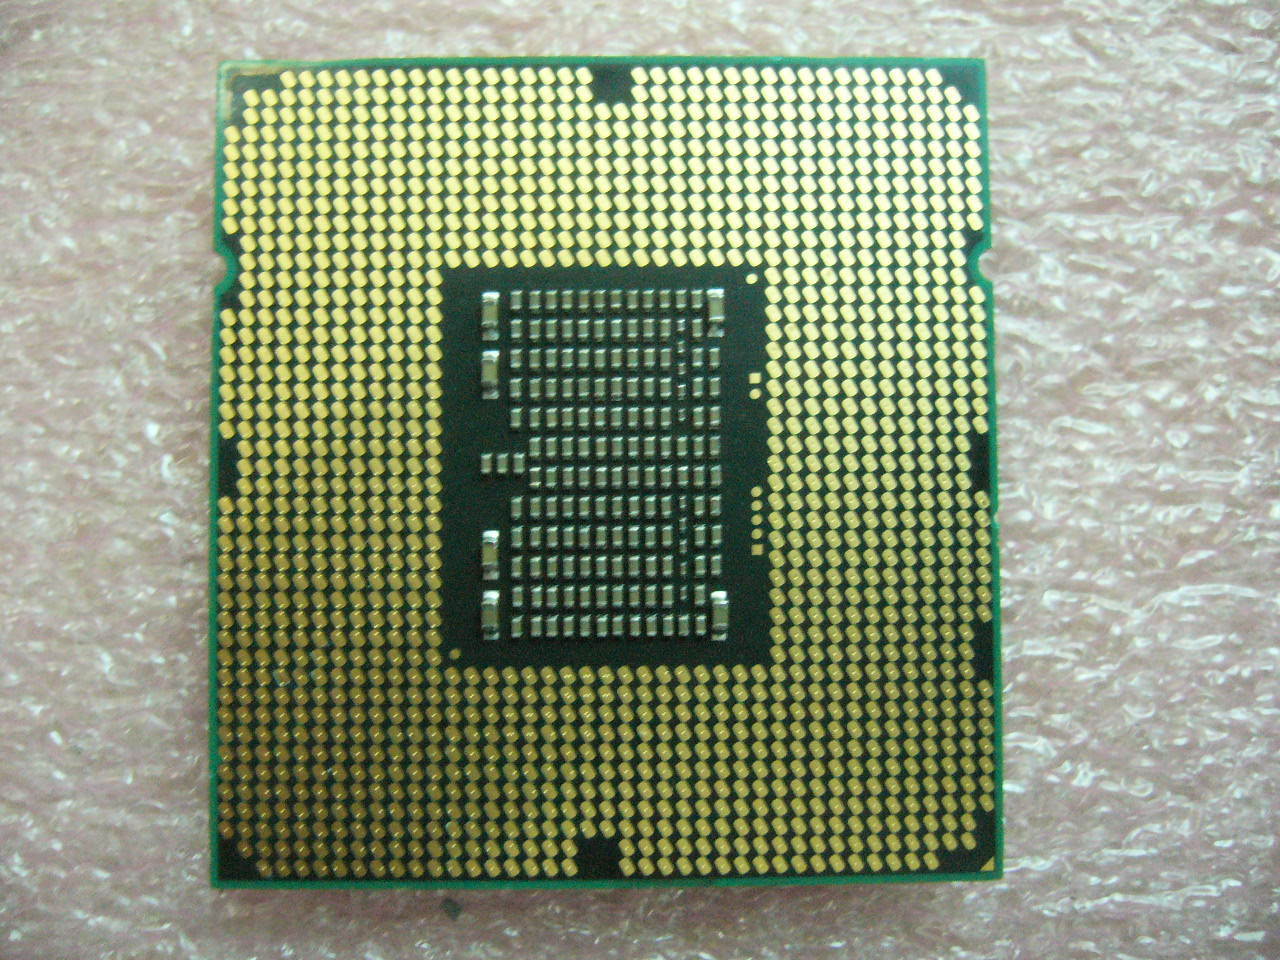 QTY 1x INTEL Quad-Cores Xeon ES CPU X5672 3.2GHZ/12MB LGA1366 Q4F4 - Click Image to Close